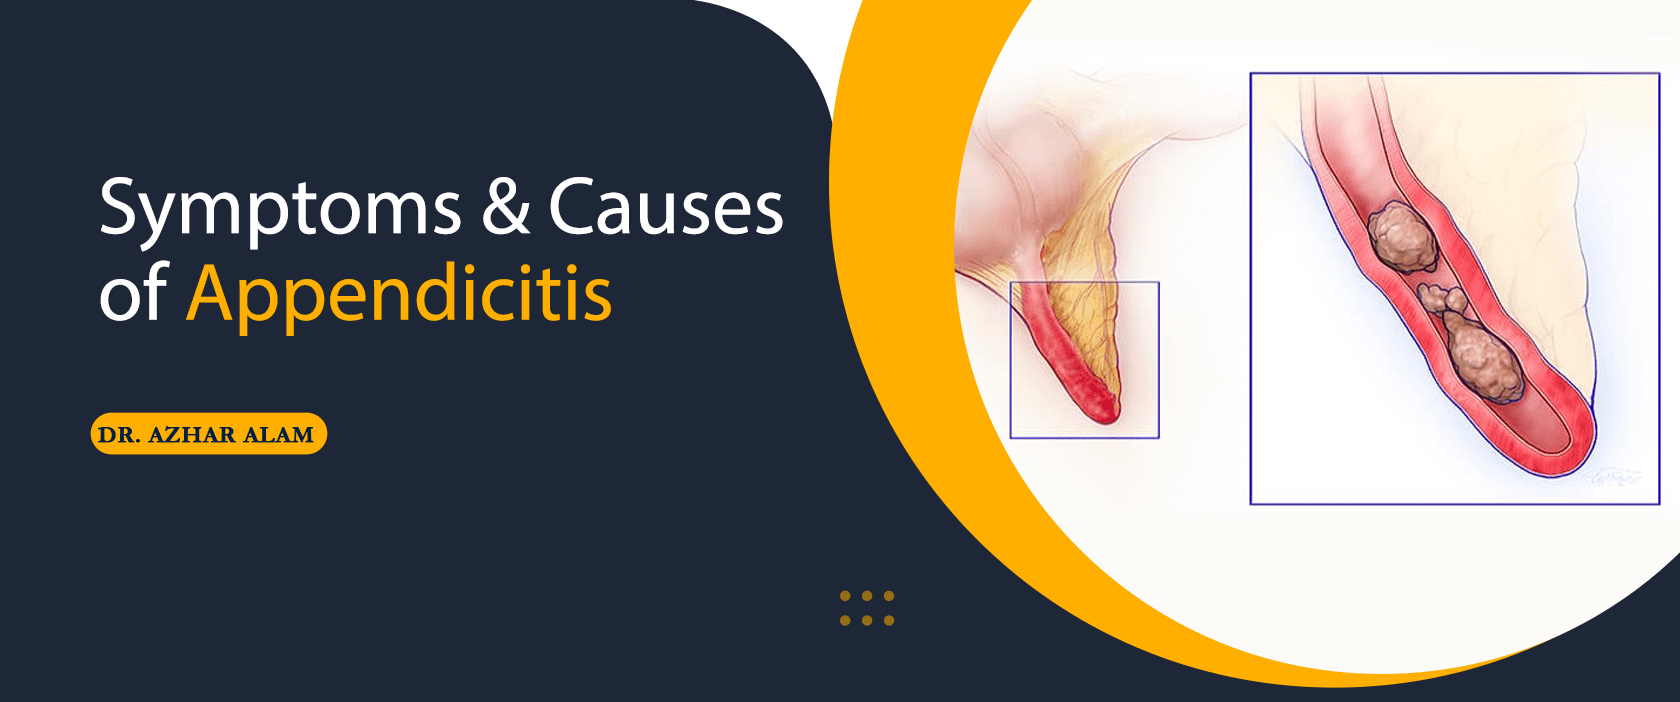 Symptoms & Causes of Appendicitis